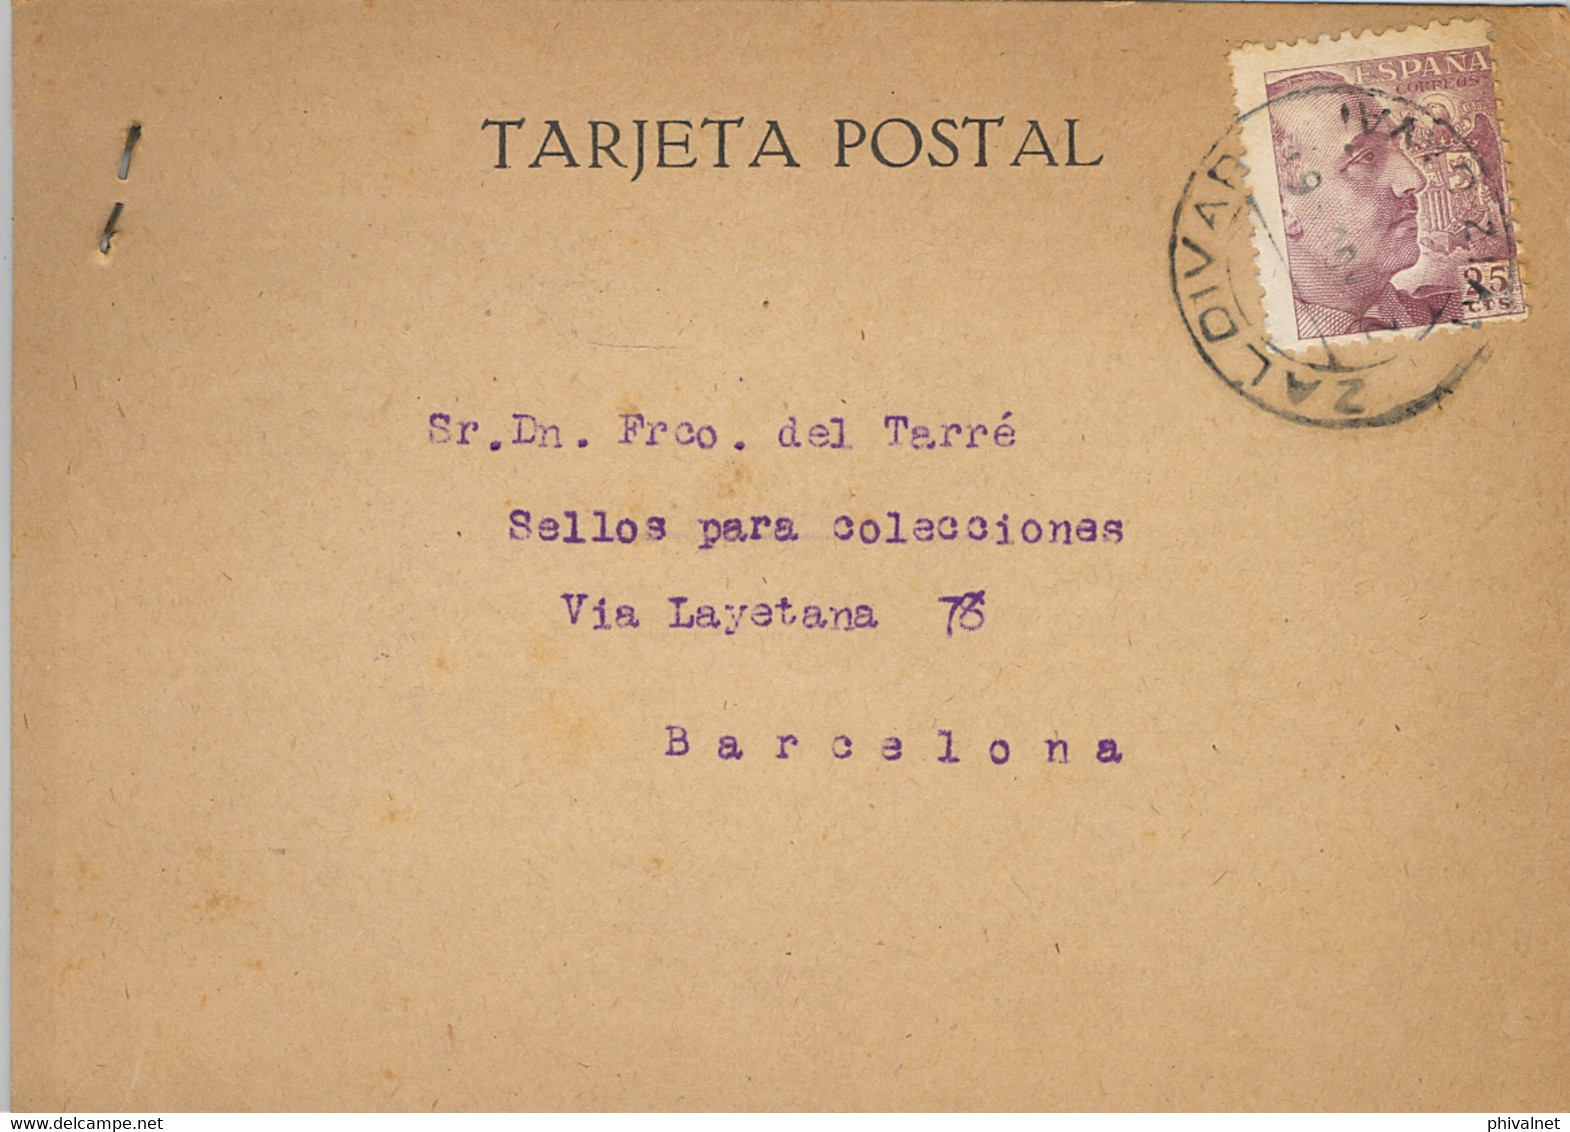 1946 VIZCAYA , T.P. CIRCULADA ENTRE ZALDIVAR Y BARCELONA , DIRIGIDA A FRANCISCO DEL TARRÉ - Lettres & Documents